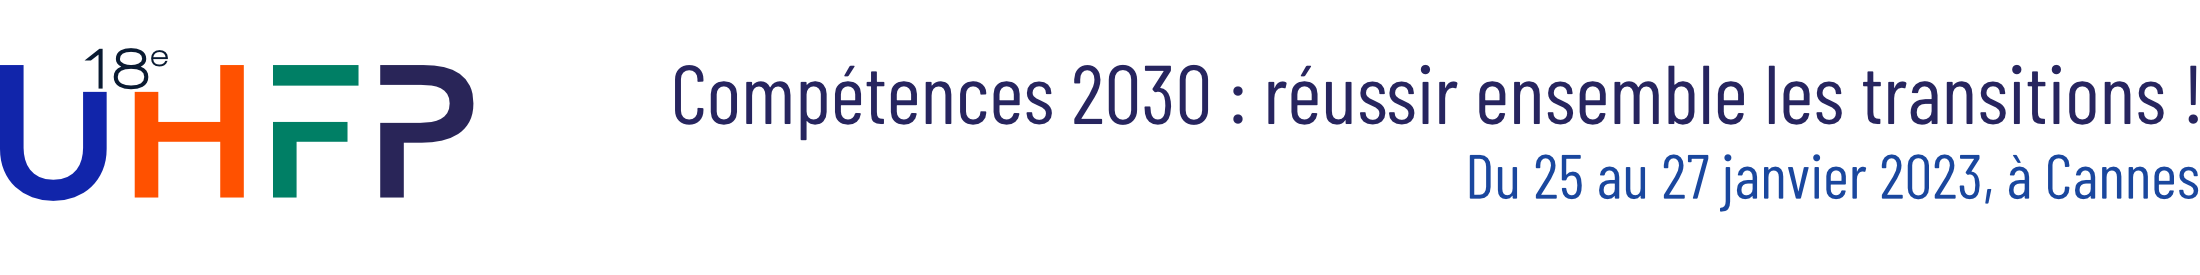 UHFP 2023 - Compétences 2030 : résussir ensemble les transitions !